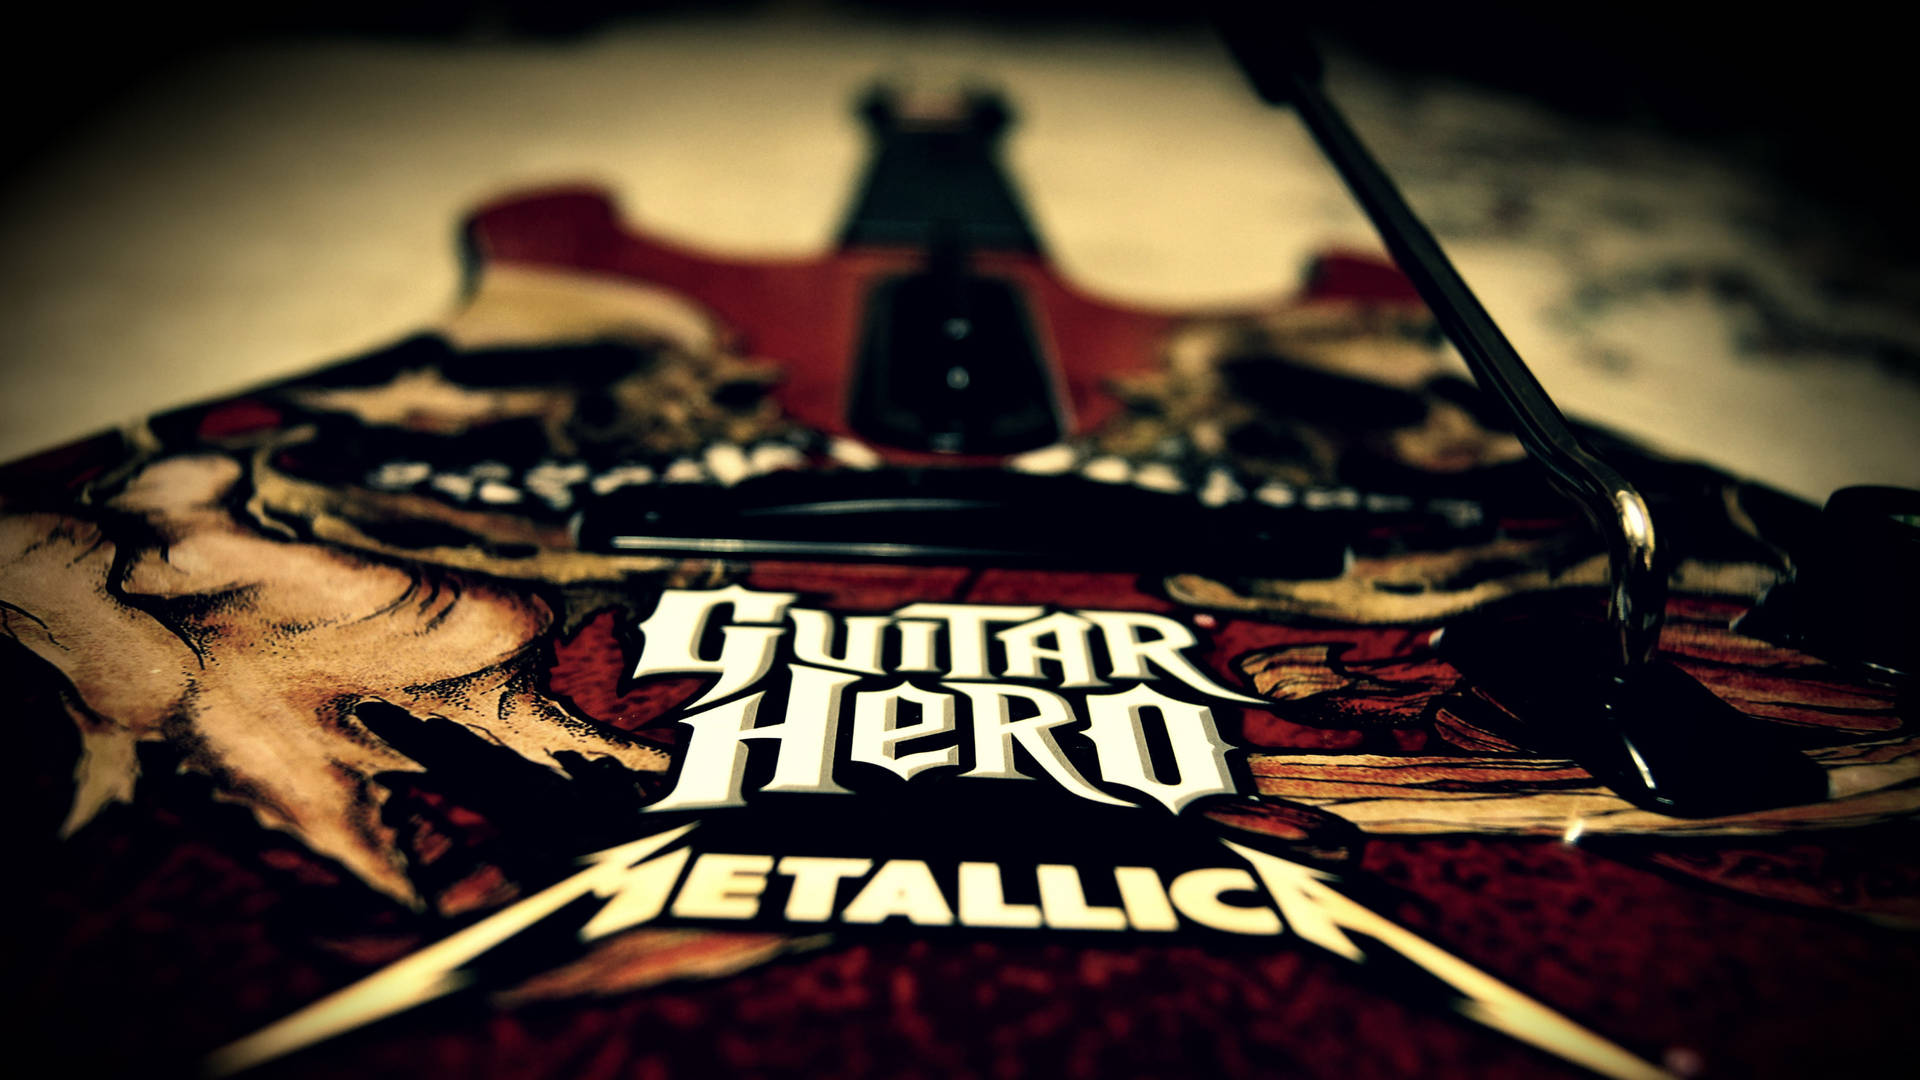 Guitar Hero Metallica On Guitar Wallpaper